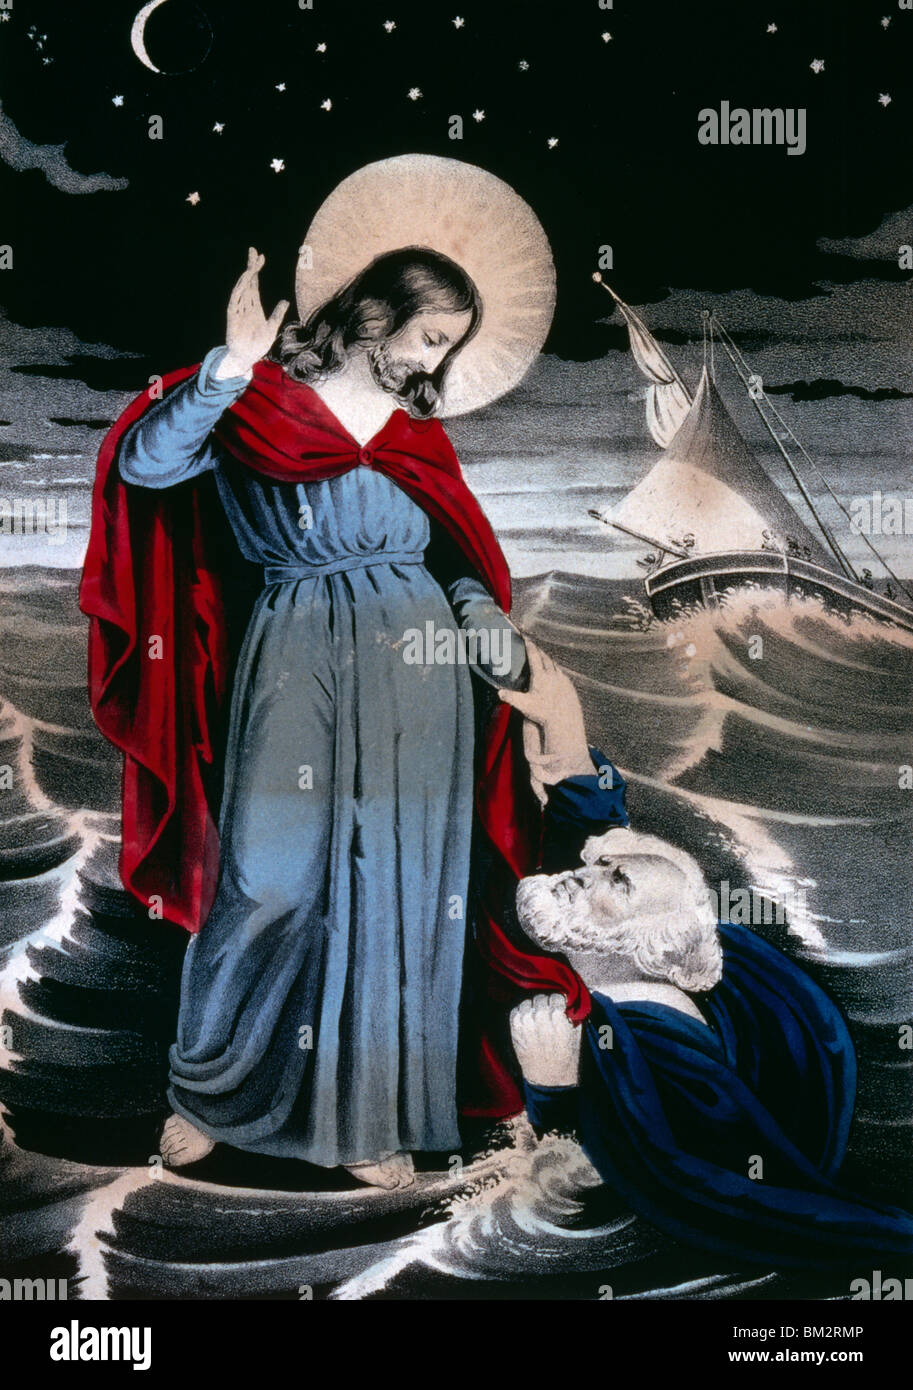 Christus geht auf das Meer, Currier und Ives, Farbe Lithographie, (1857-1907), Washington, D.C., Library of Congress Stockfoto